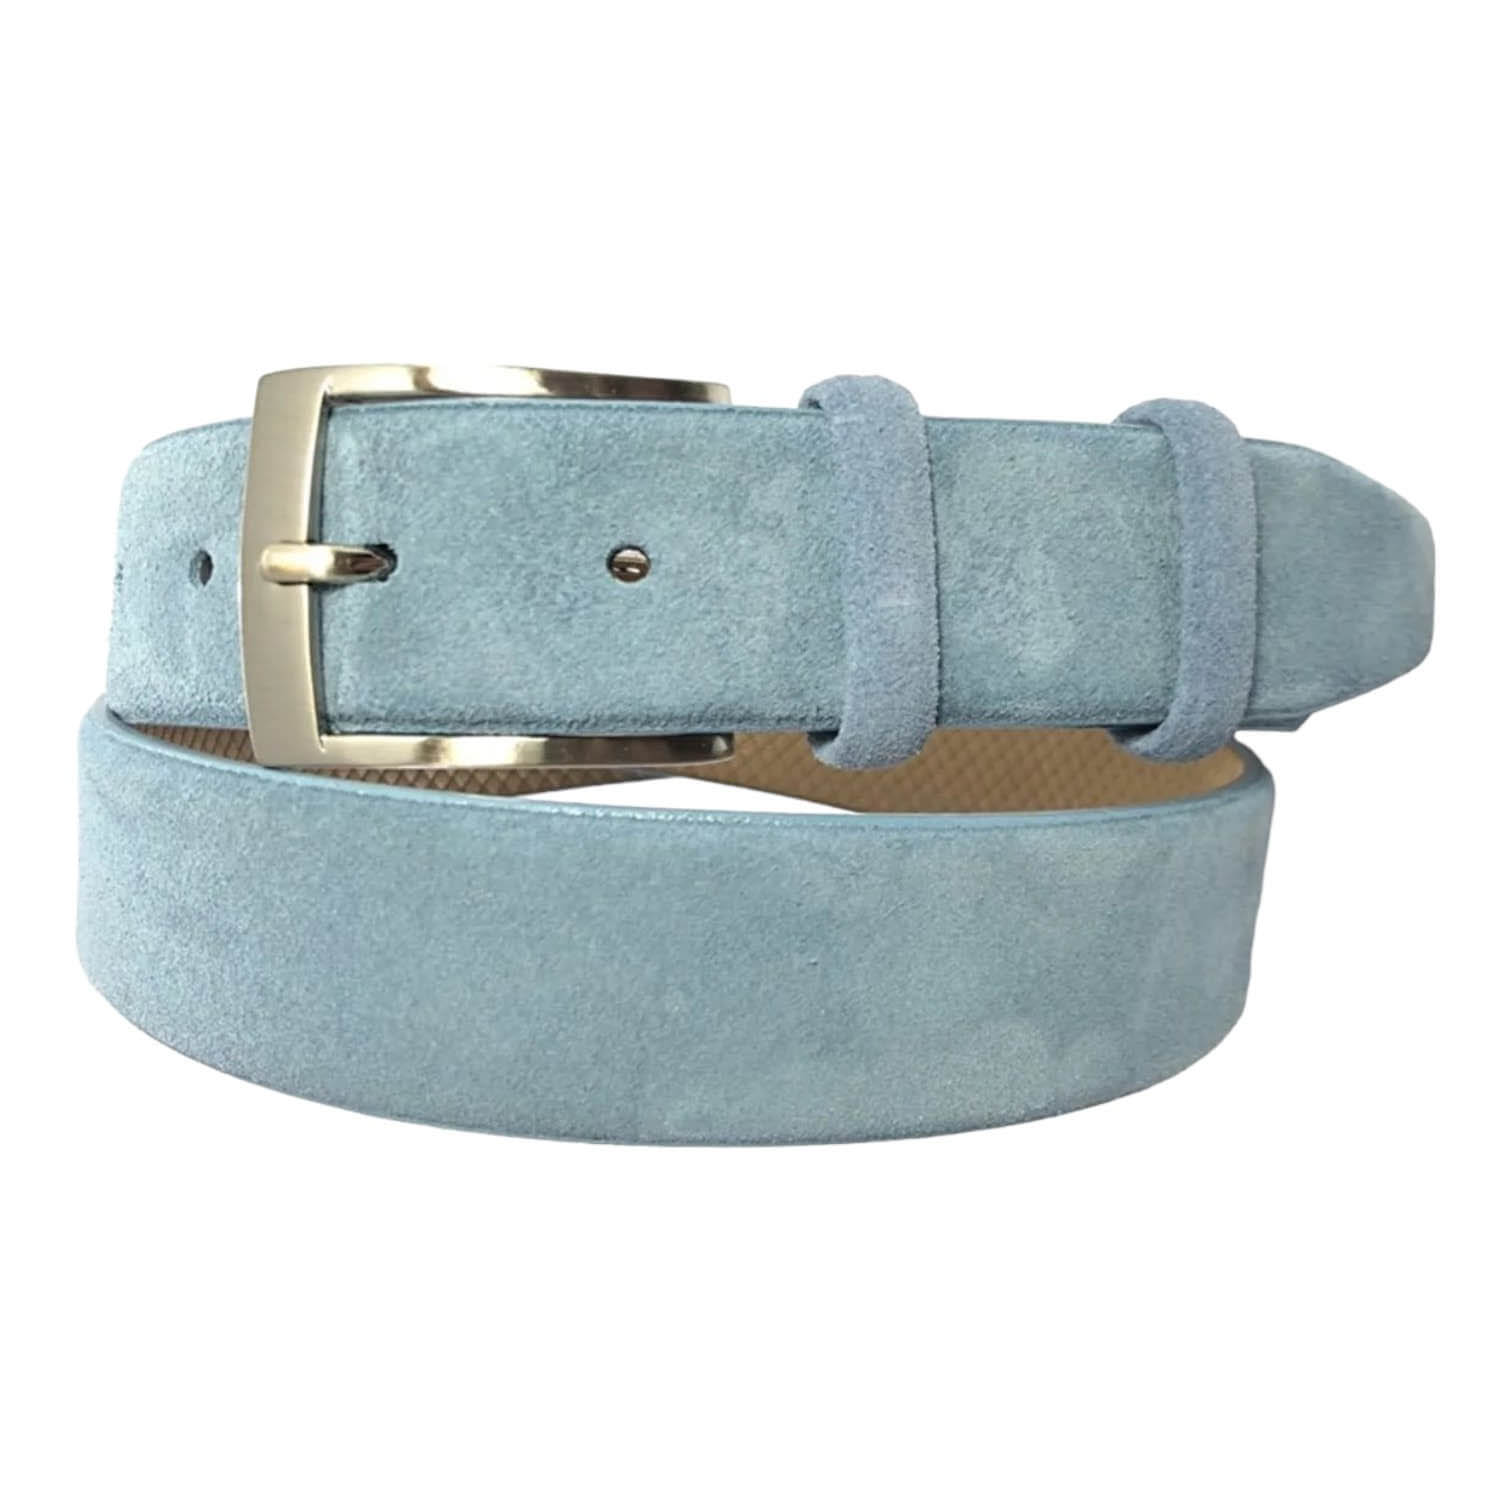 Buy Light Blue Suede Leather Belt - LeatherBeltsOnline.com